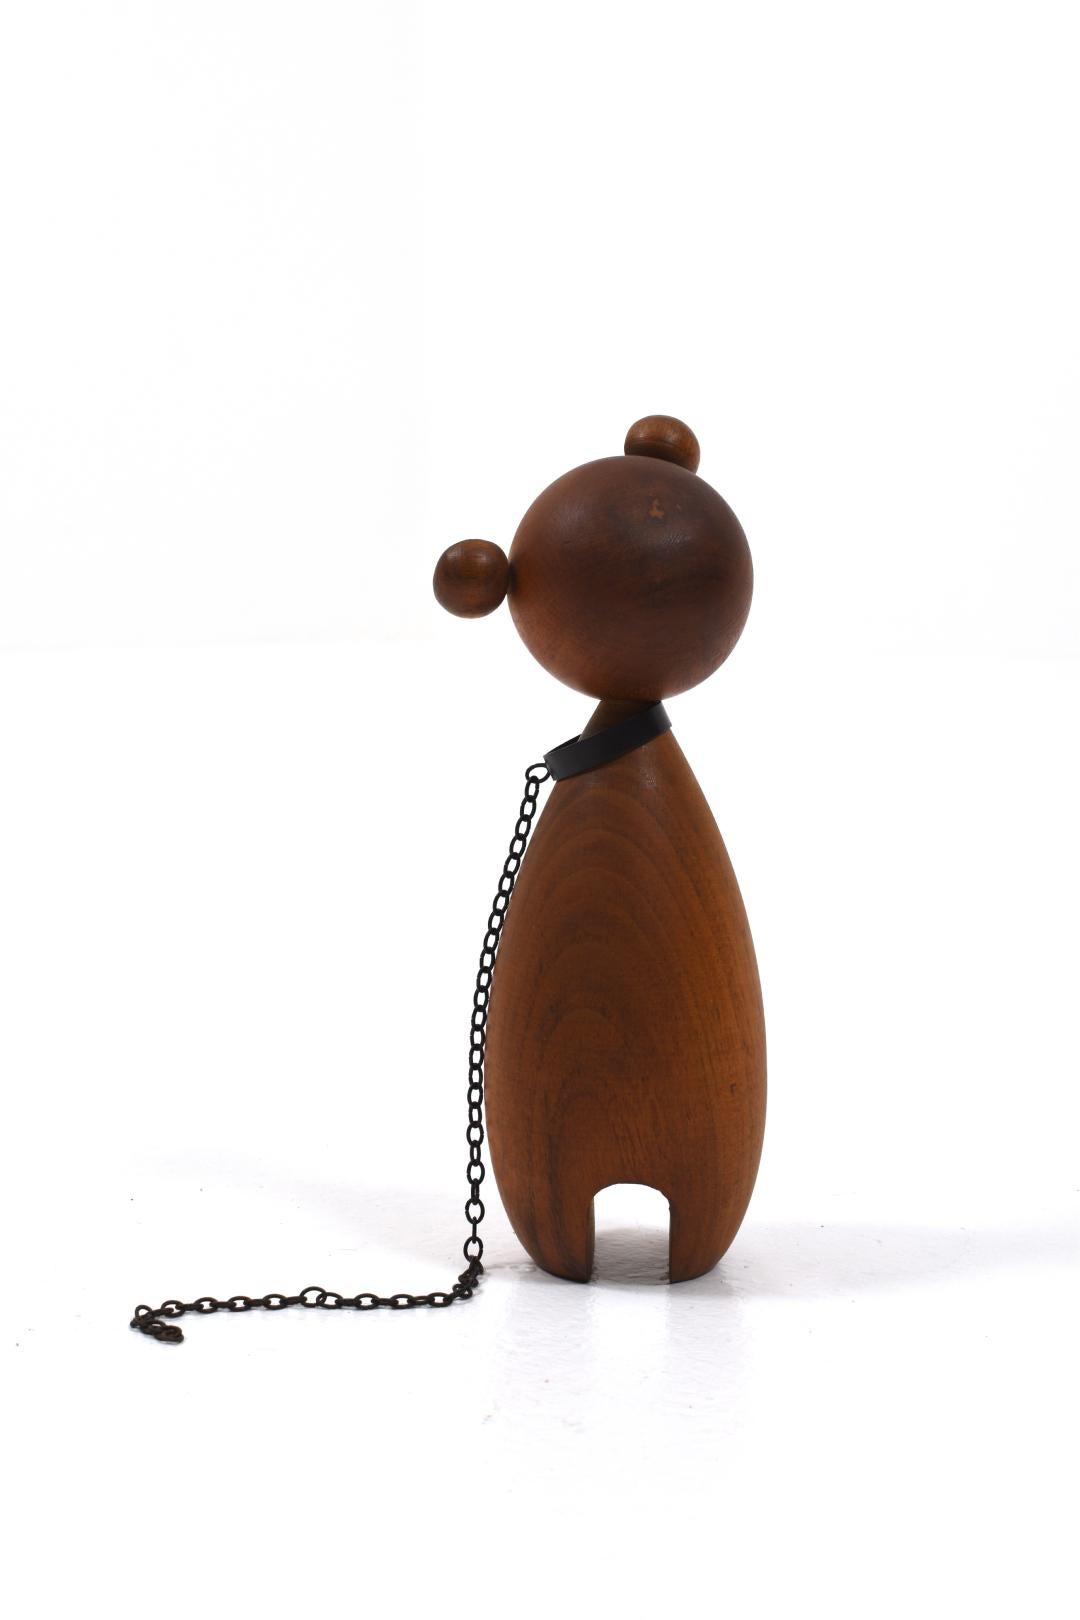 Austrian Midcentury Walnut Bear Figurine by Werkstätte Hagenauer In Good Condition For Sale In Göteborg, SE